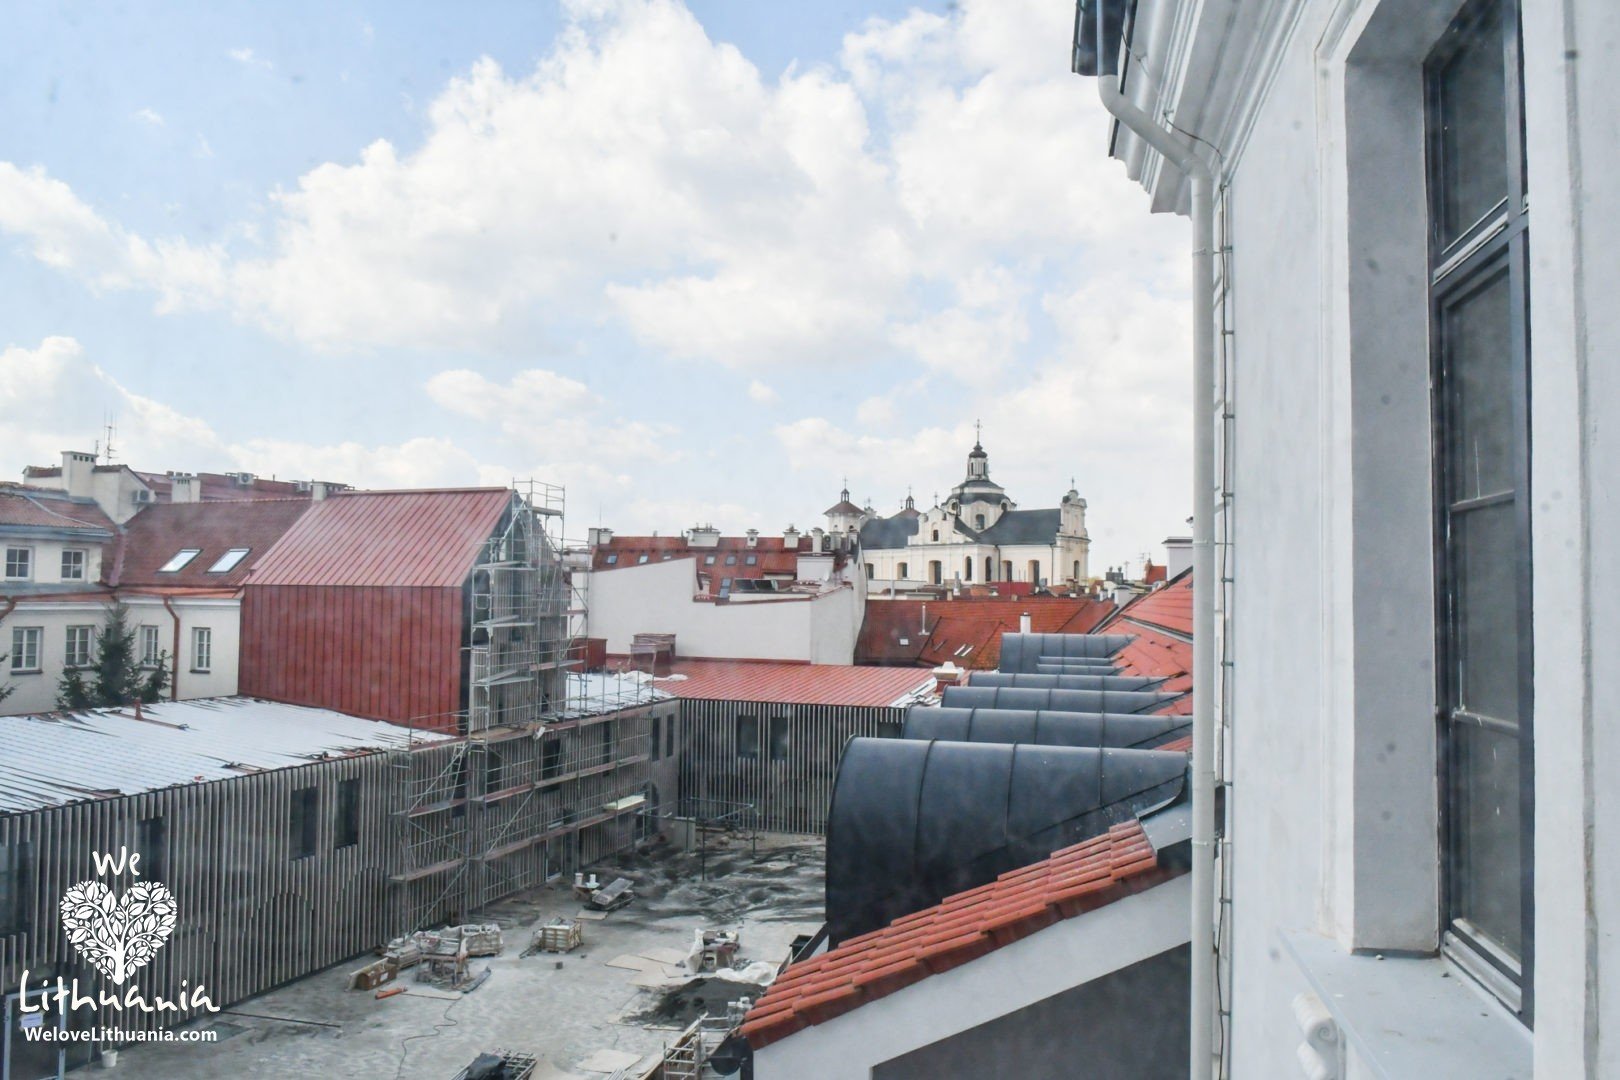 Baigiami restauruoti Pacų rūmai Vilniuje